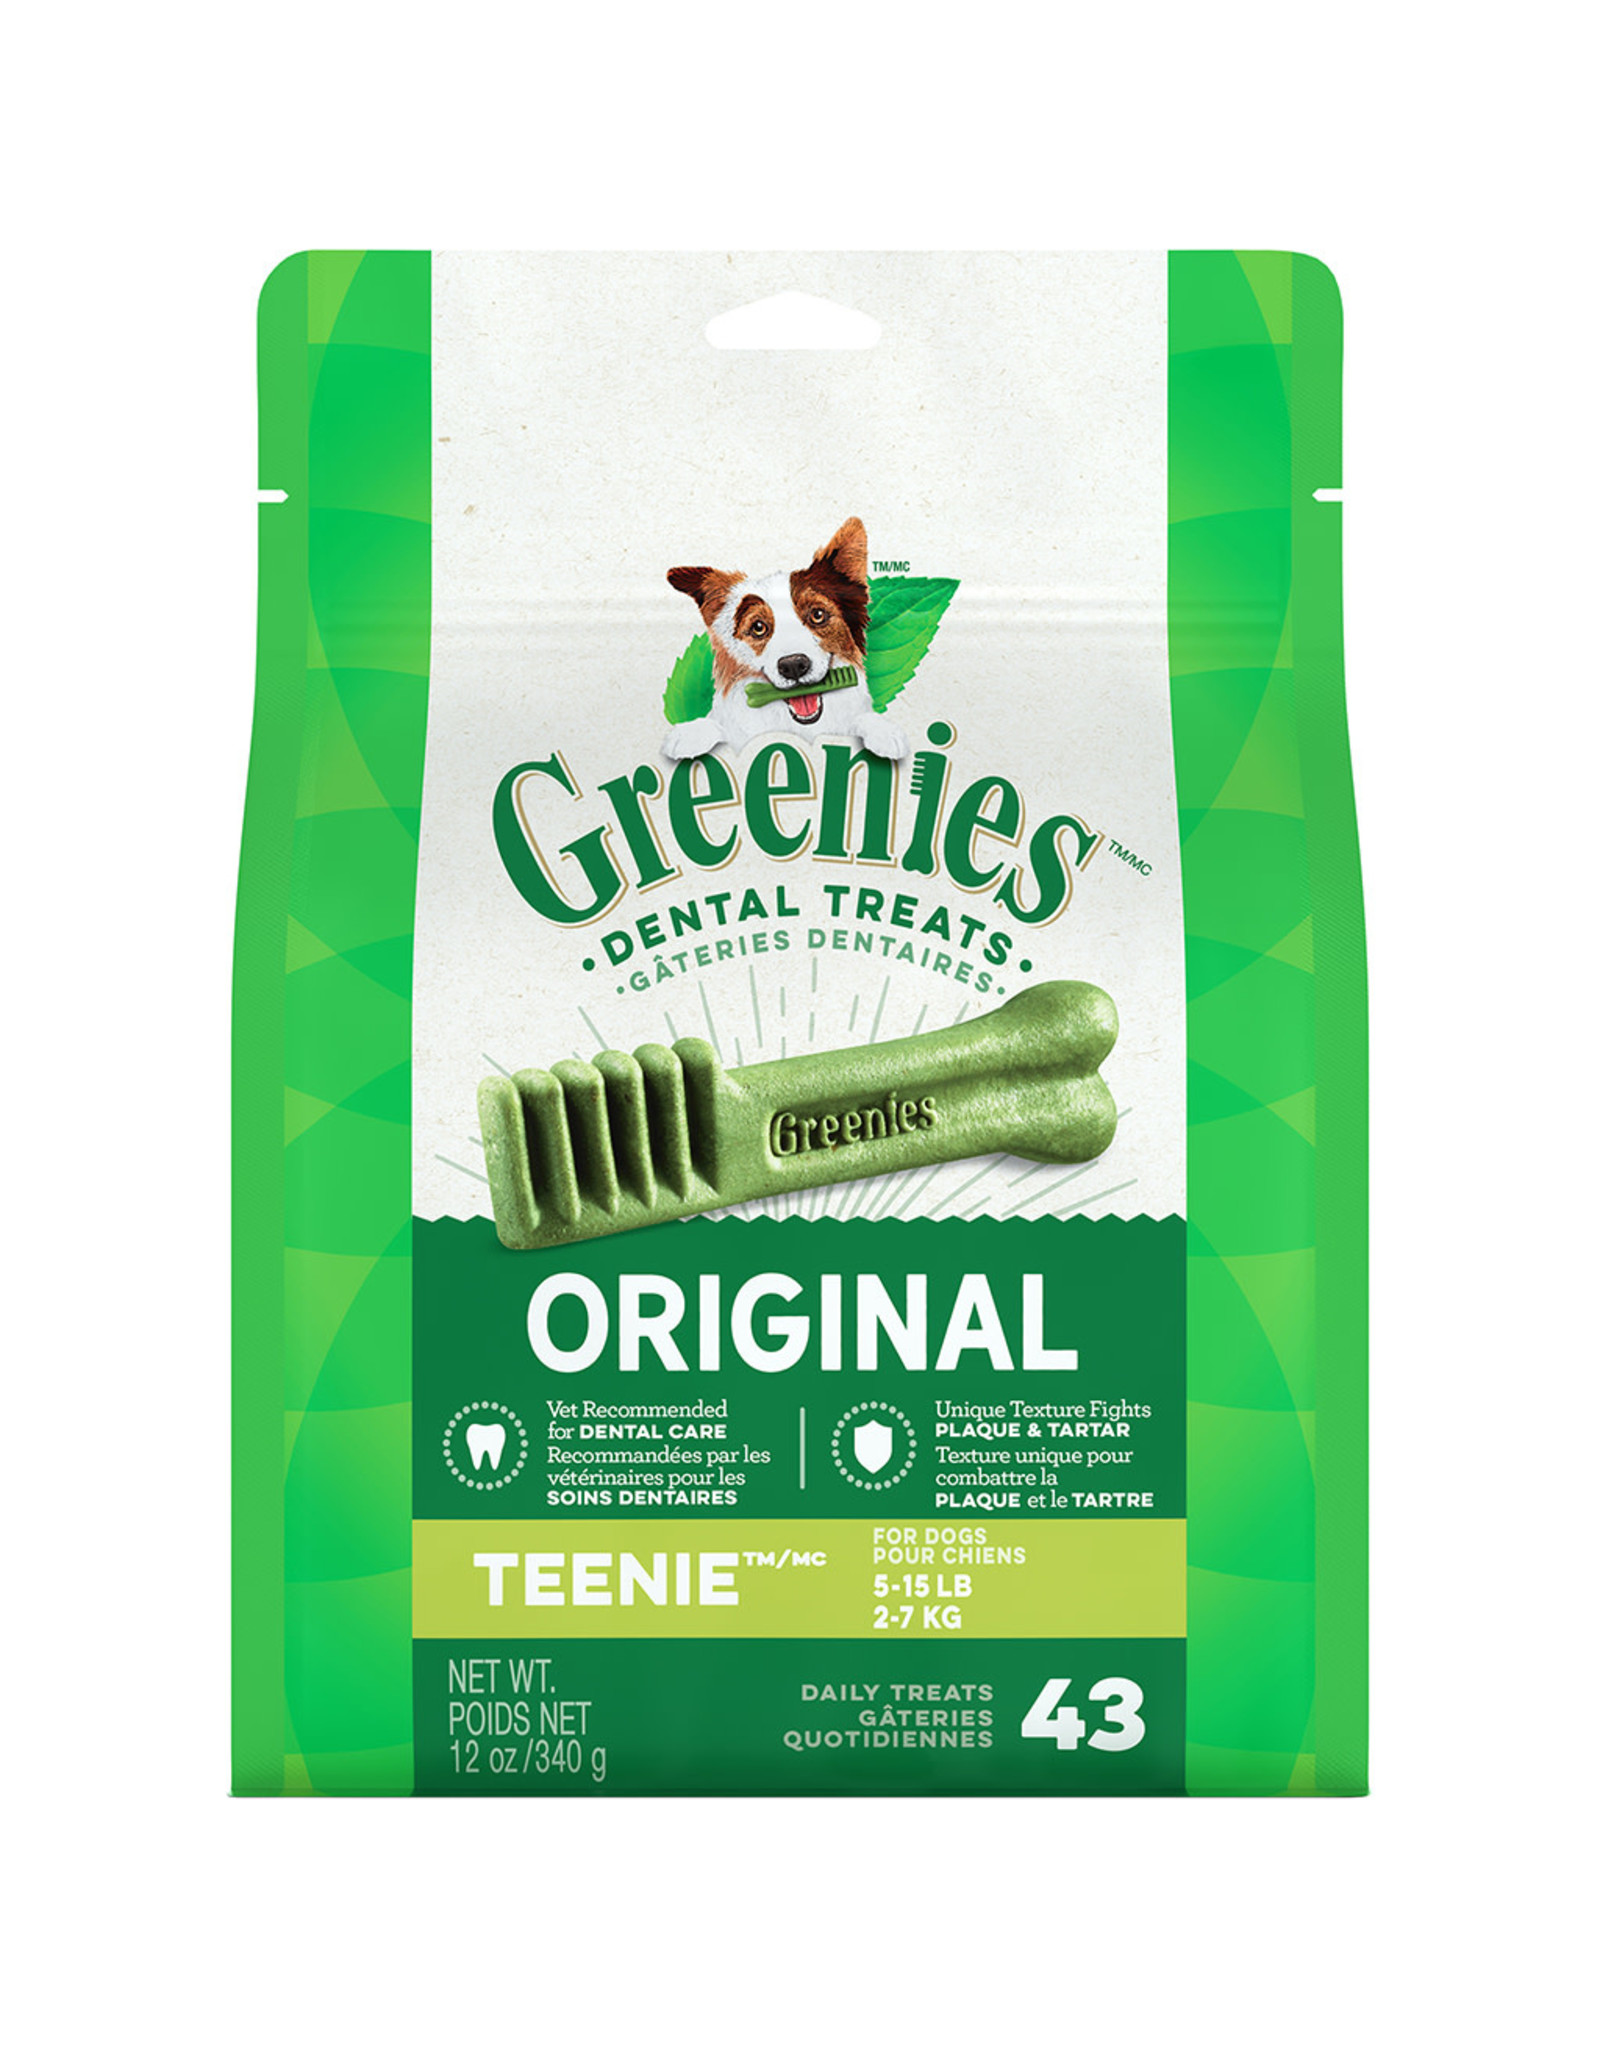 Greenies Greenies Original Dental Treats 12OZ